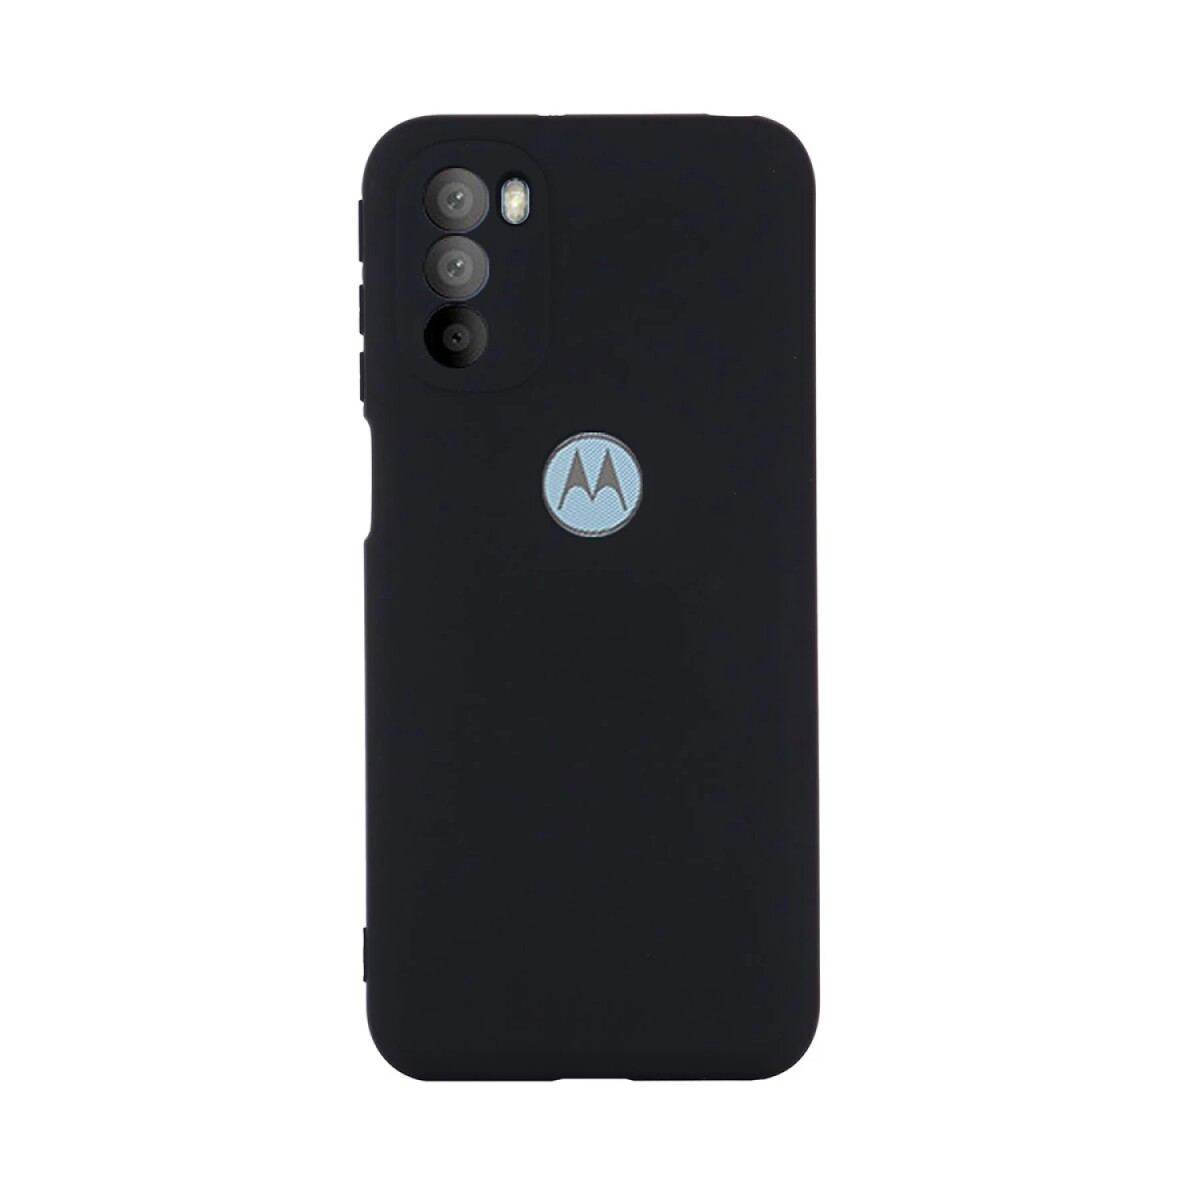 Protector Funda Case de Silicona para Motorola Moto G51 - Negro 